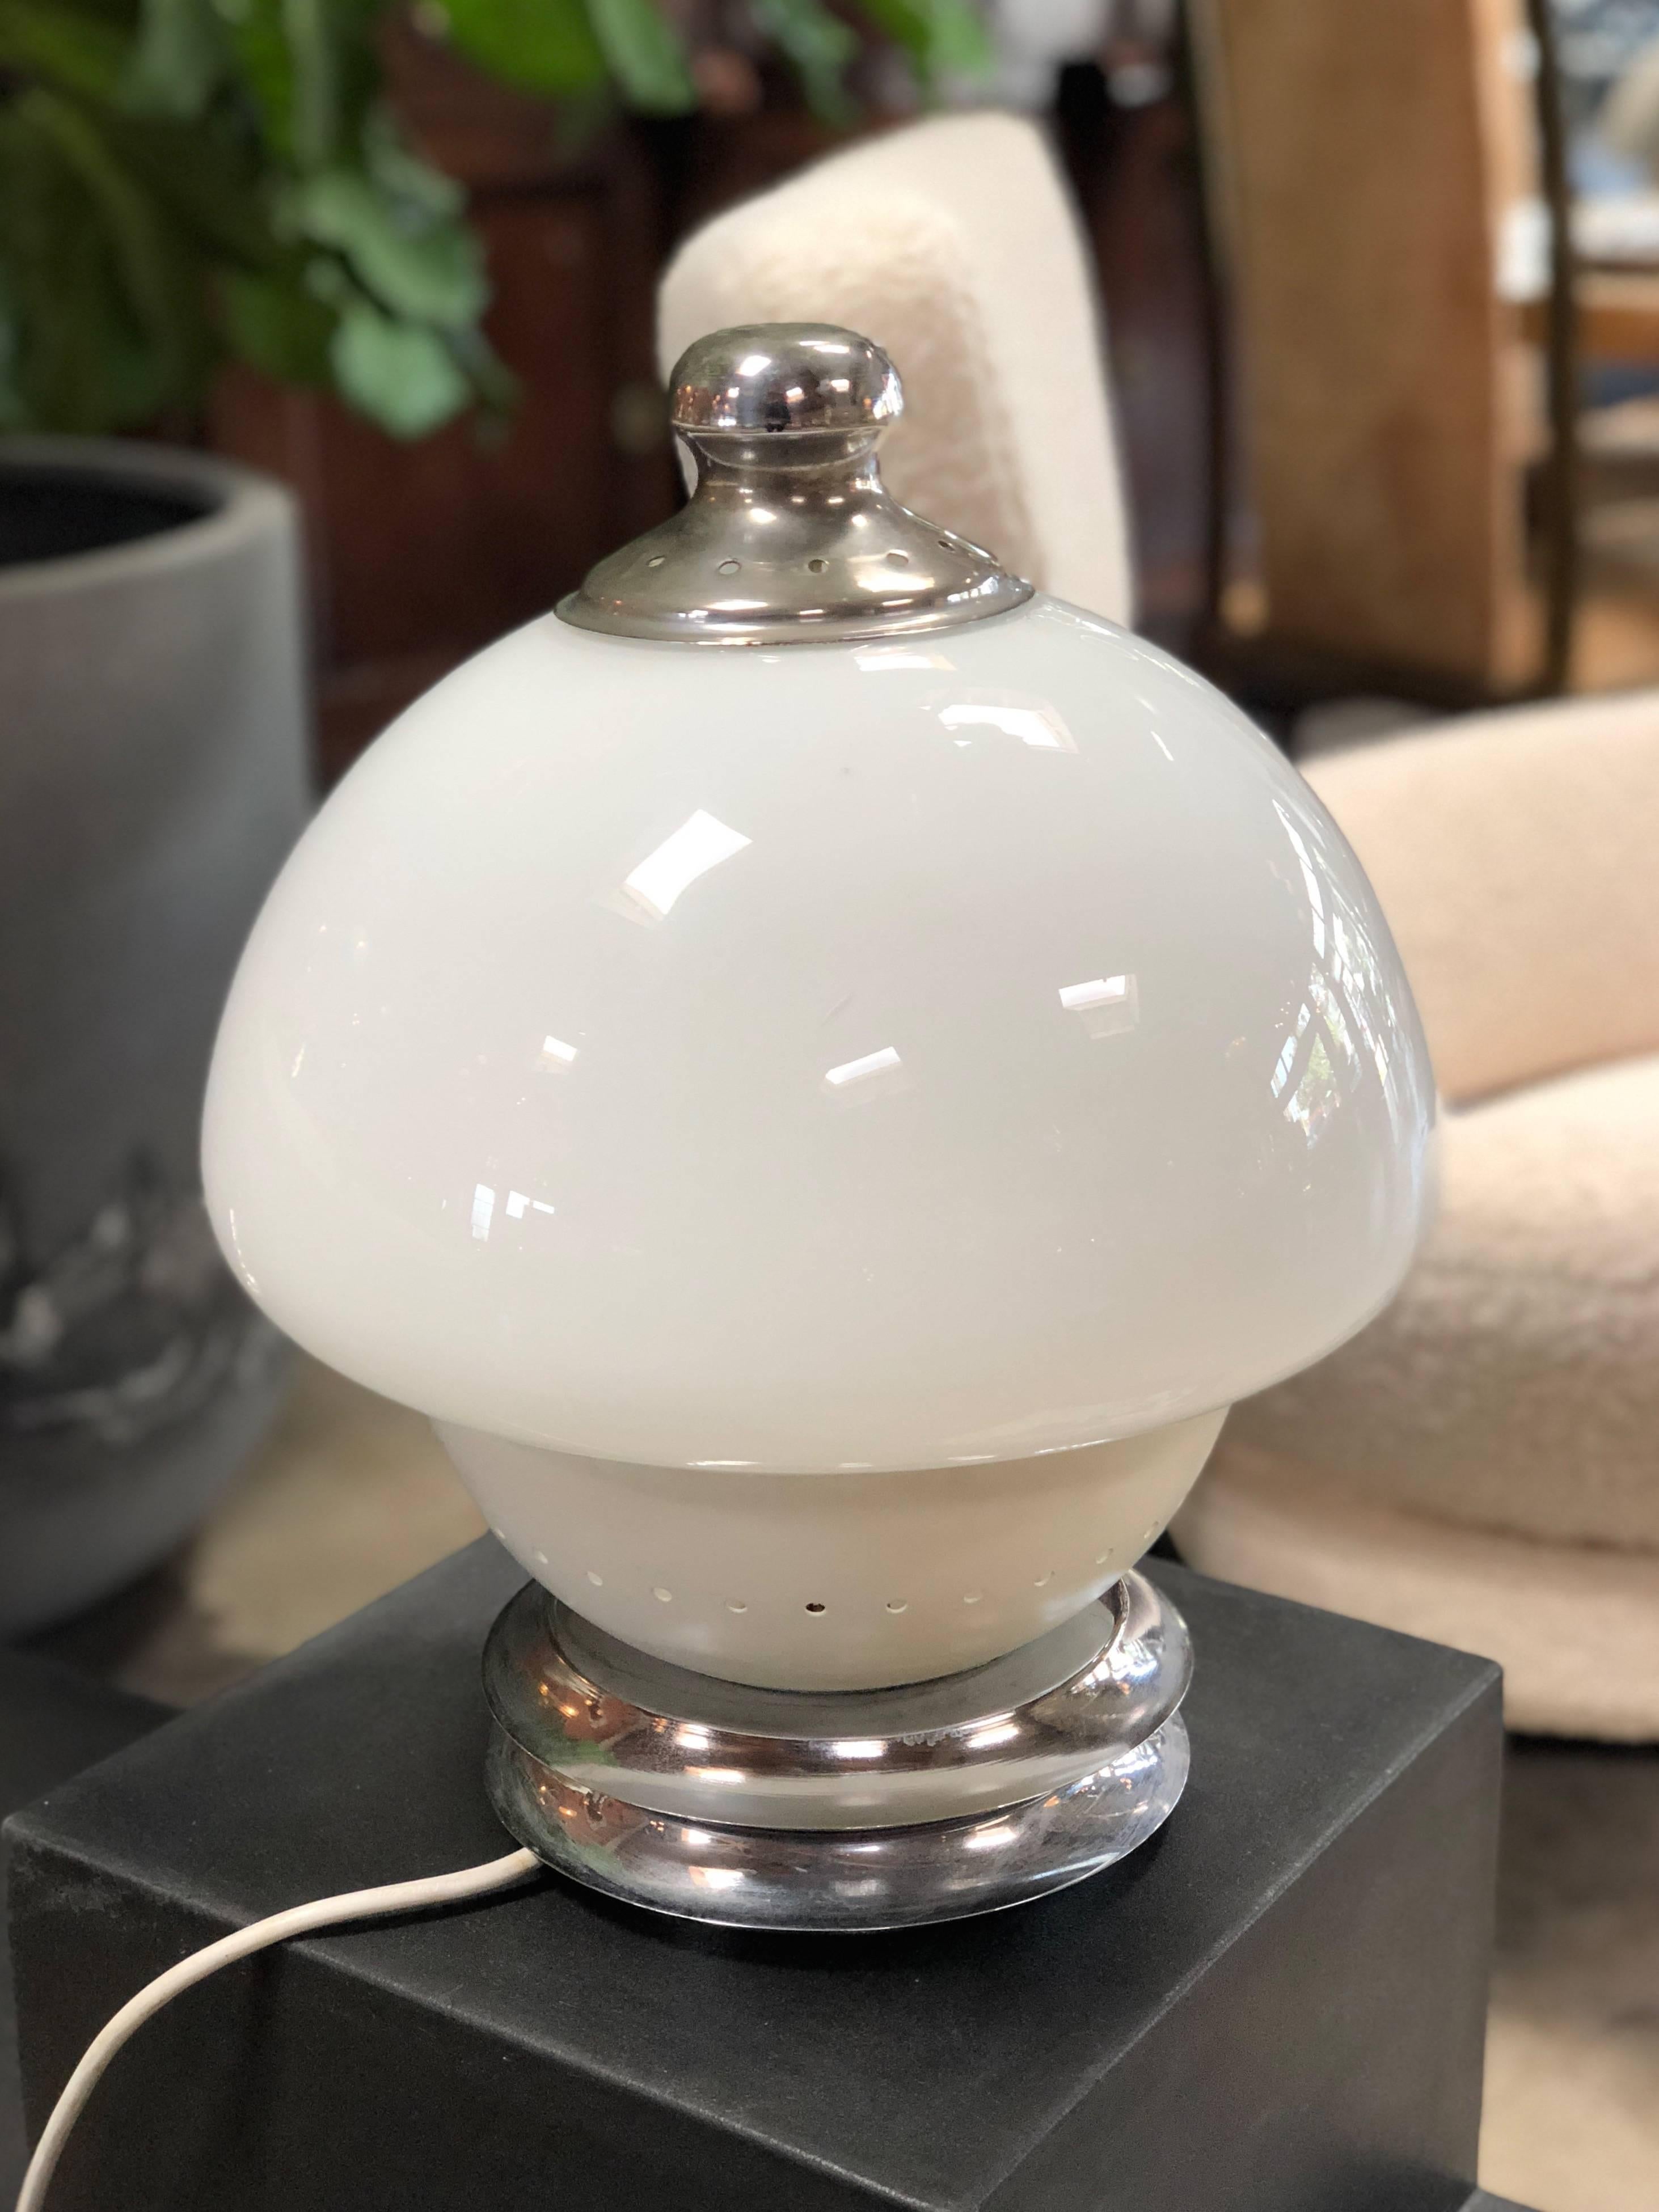 L'originalité de cet article chic réside dans la forme du dôme de la lampe : une partie en verre de lait blanc et la partie inférieure en métal blanc. Possède une base en métal chromé.